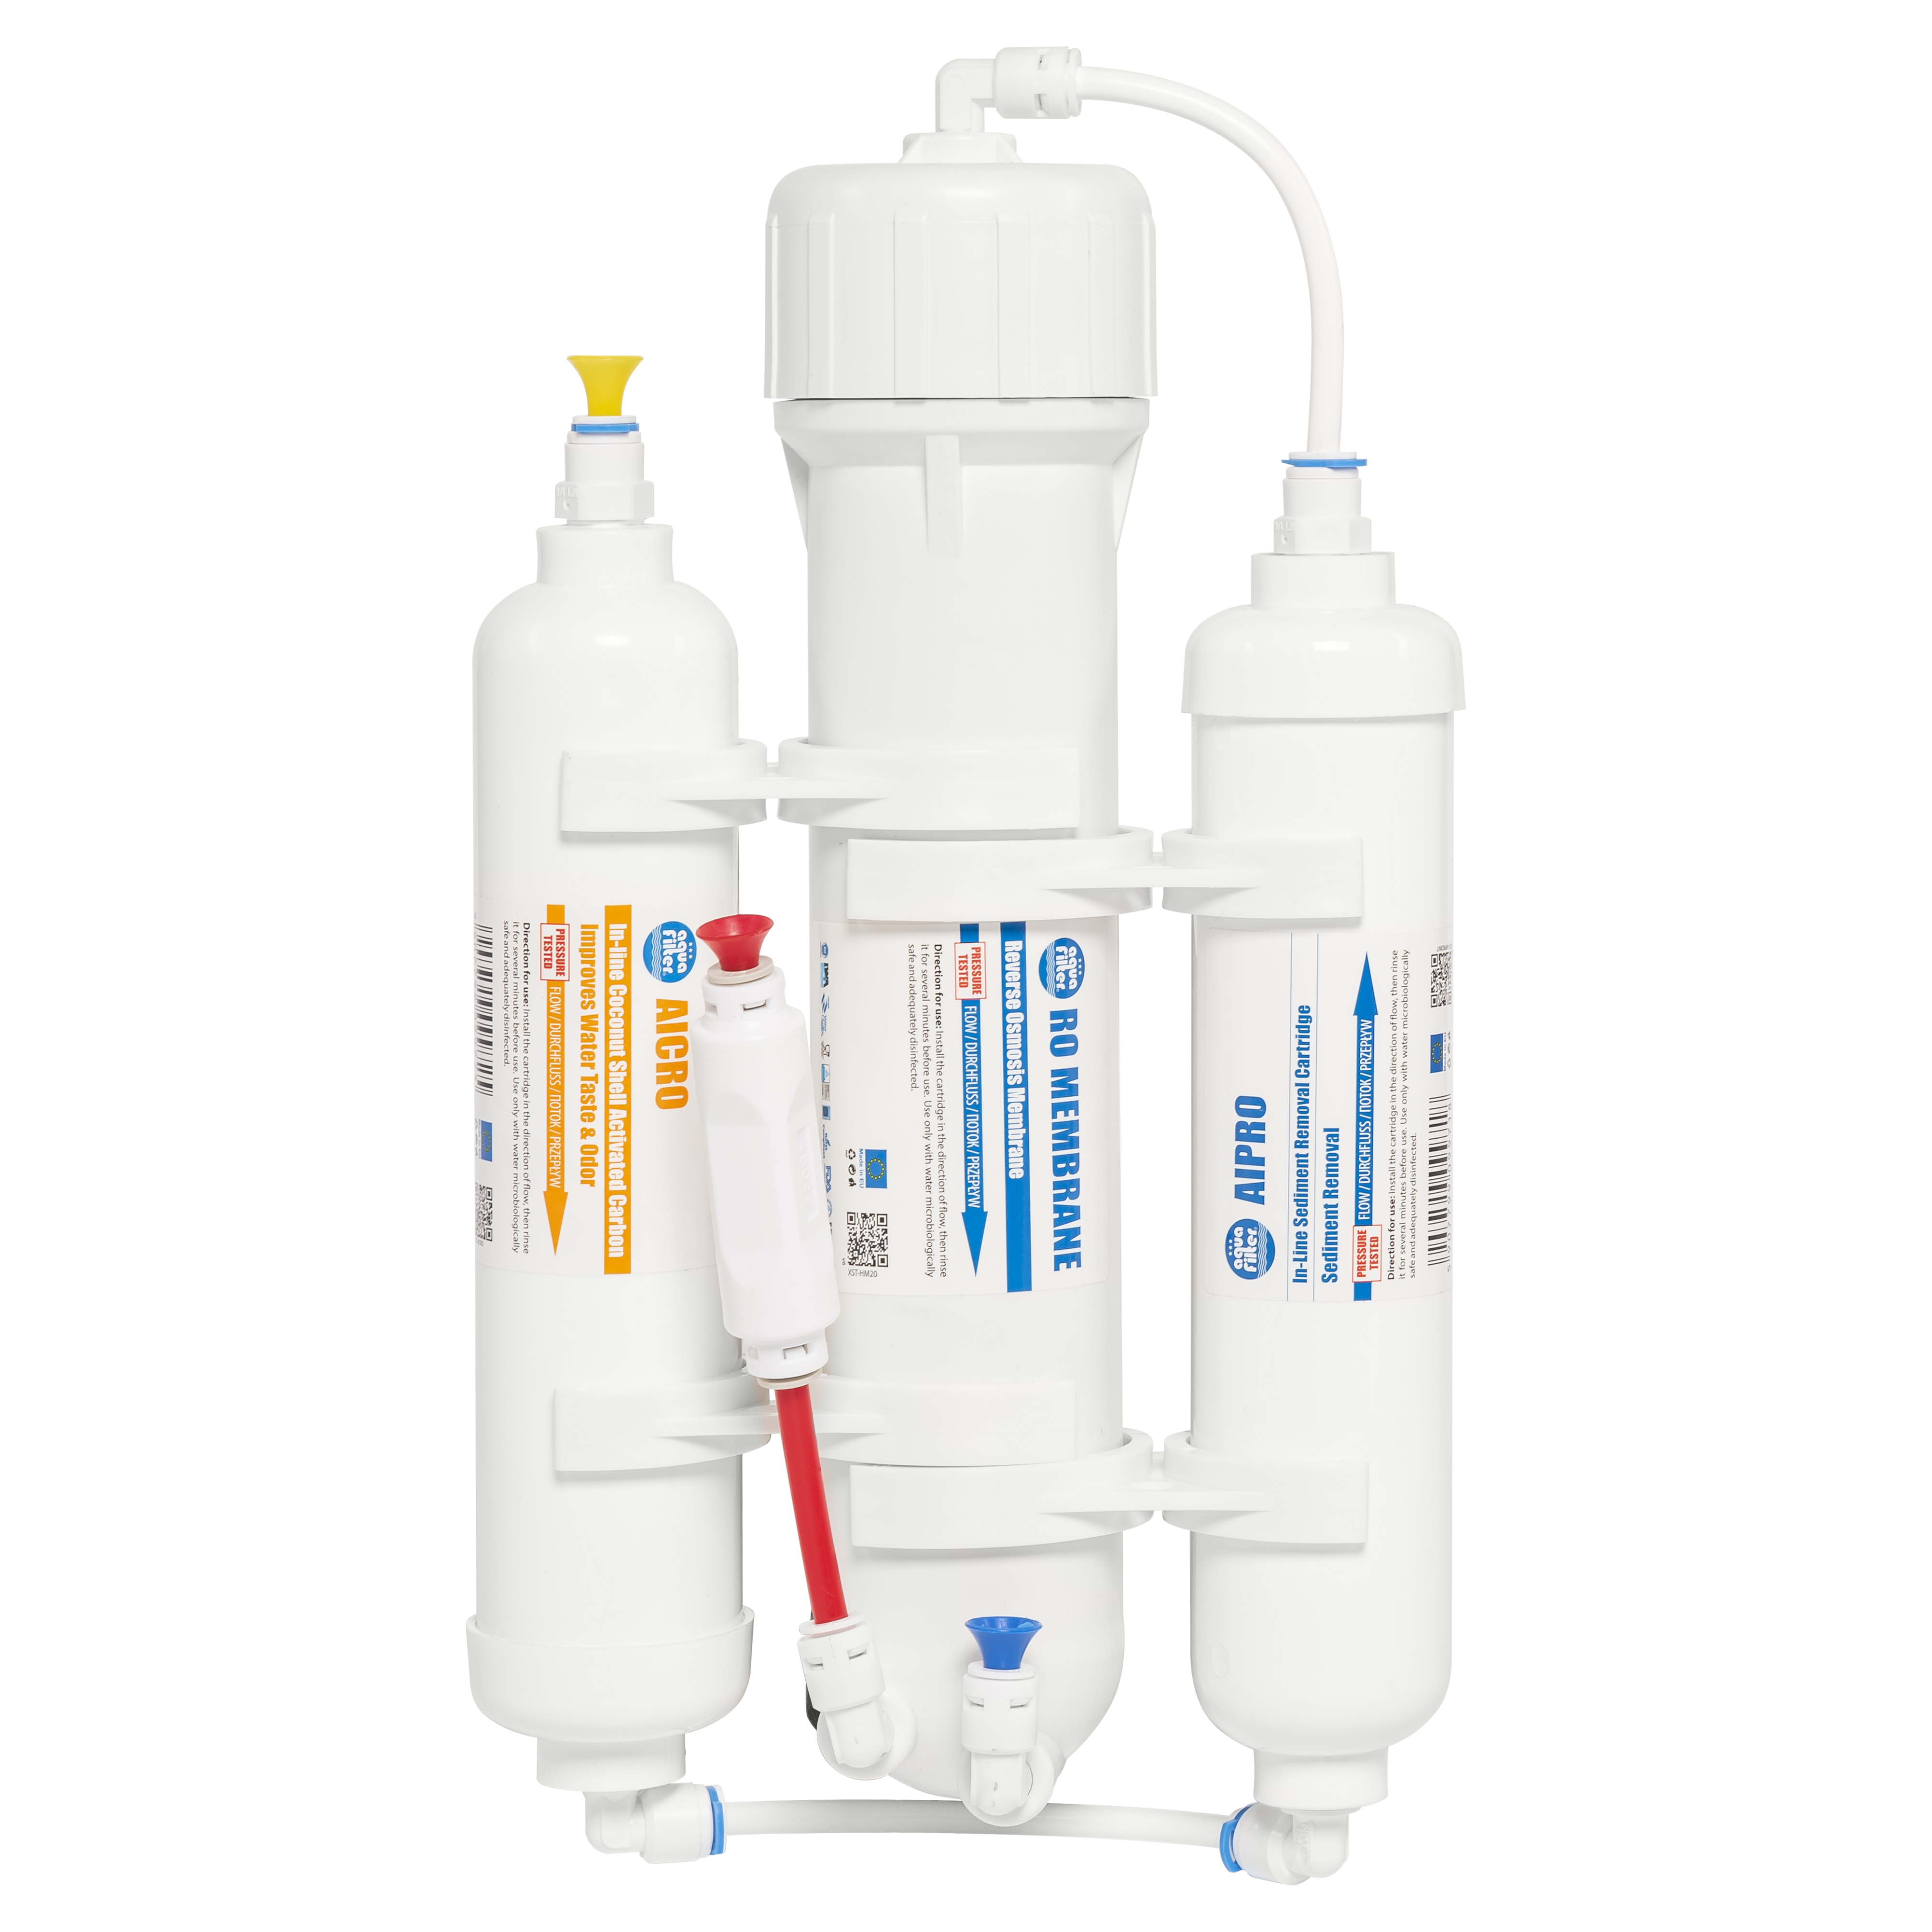 Купить трехступенчатый фильтр для воды Aquafilter RX-AFRO3-AQ для акваристики в Киеве